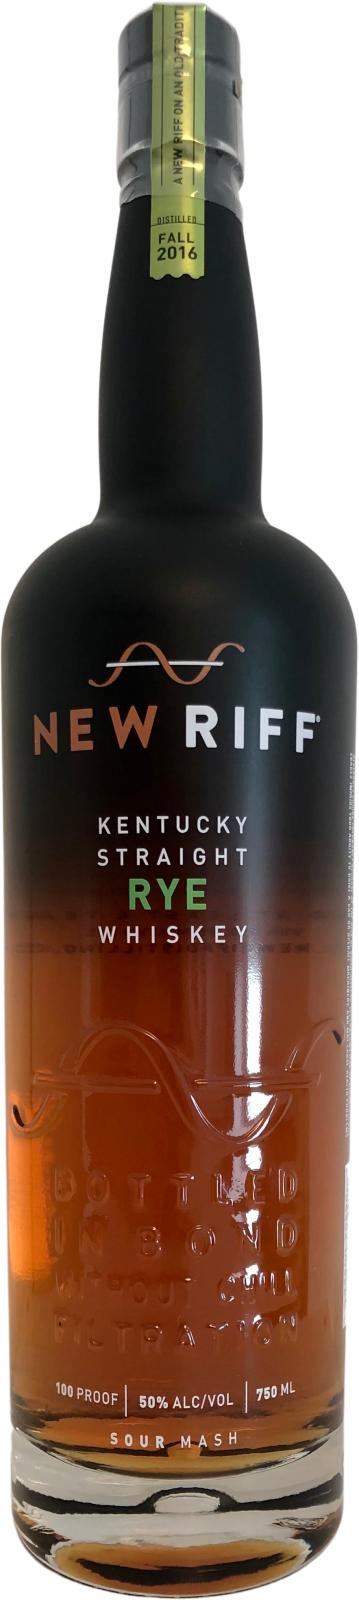 New Riff 2016 Bottled in Bond 2021 Release Rye Whiskey